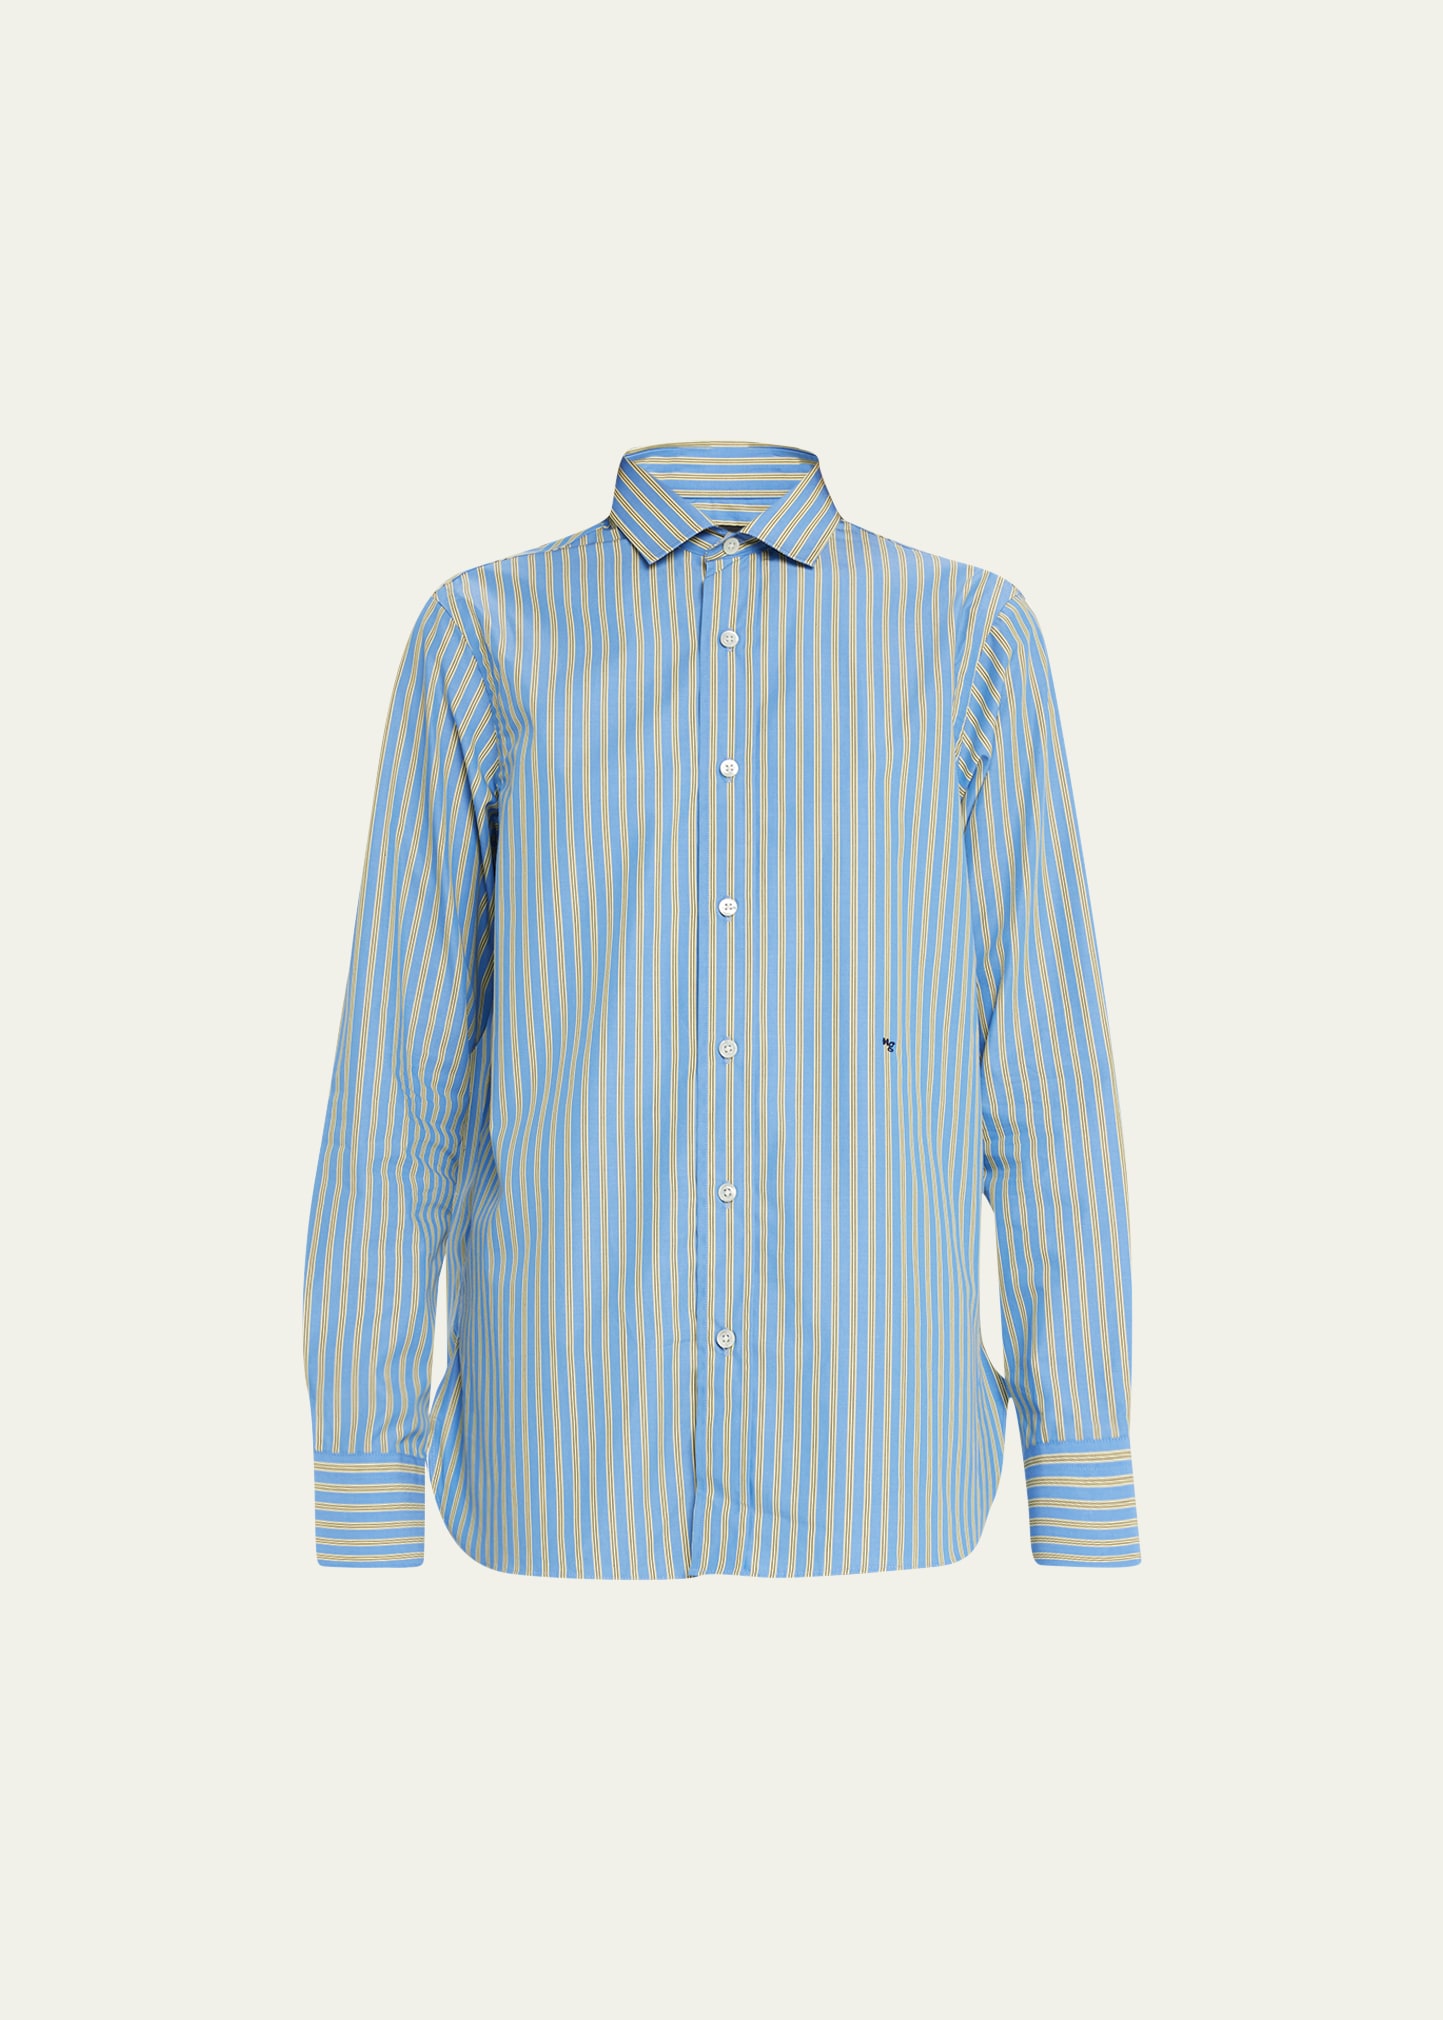 HOMMEGIRLS Classic Striped Button-Up Shirt